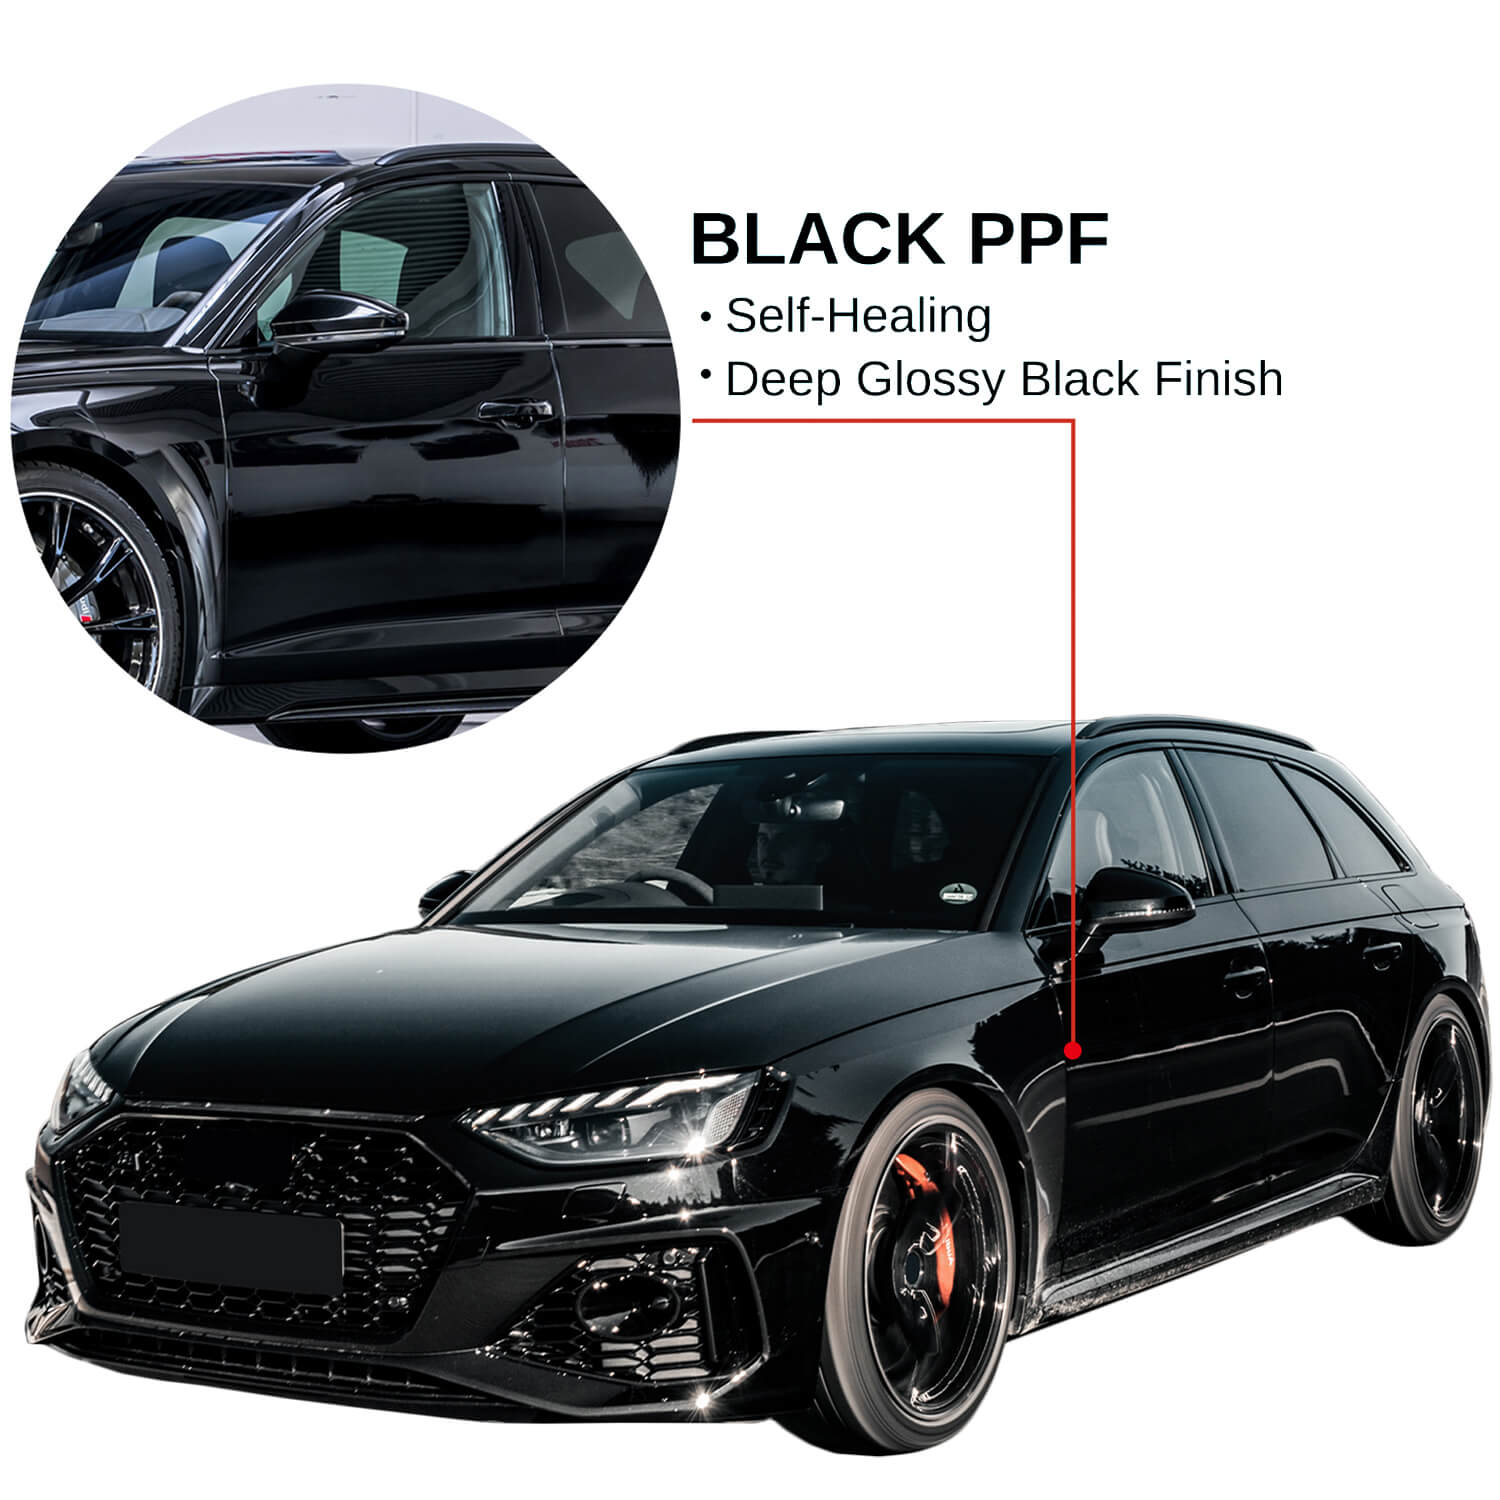 7.5mil TPU Matte Black Paint Protection Film PPF Car Vinyls Sticker Wraps